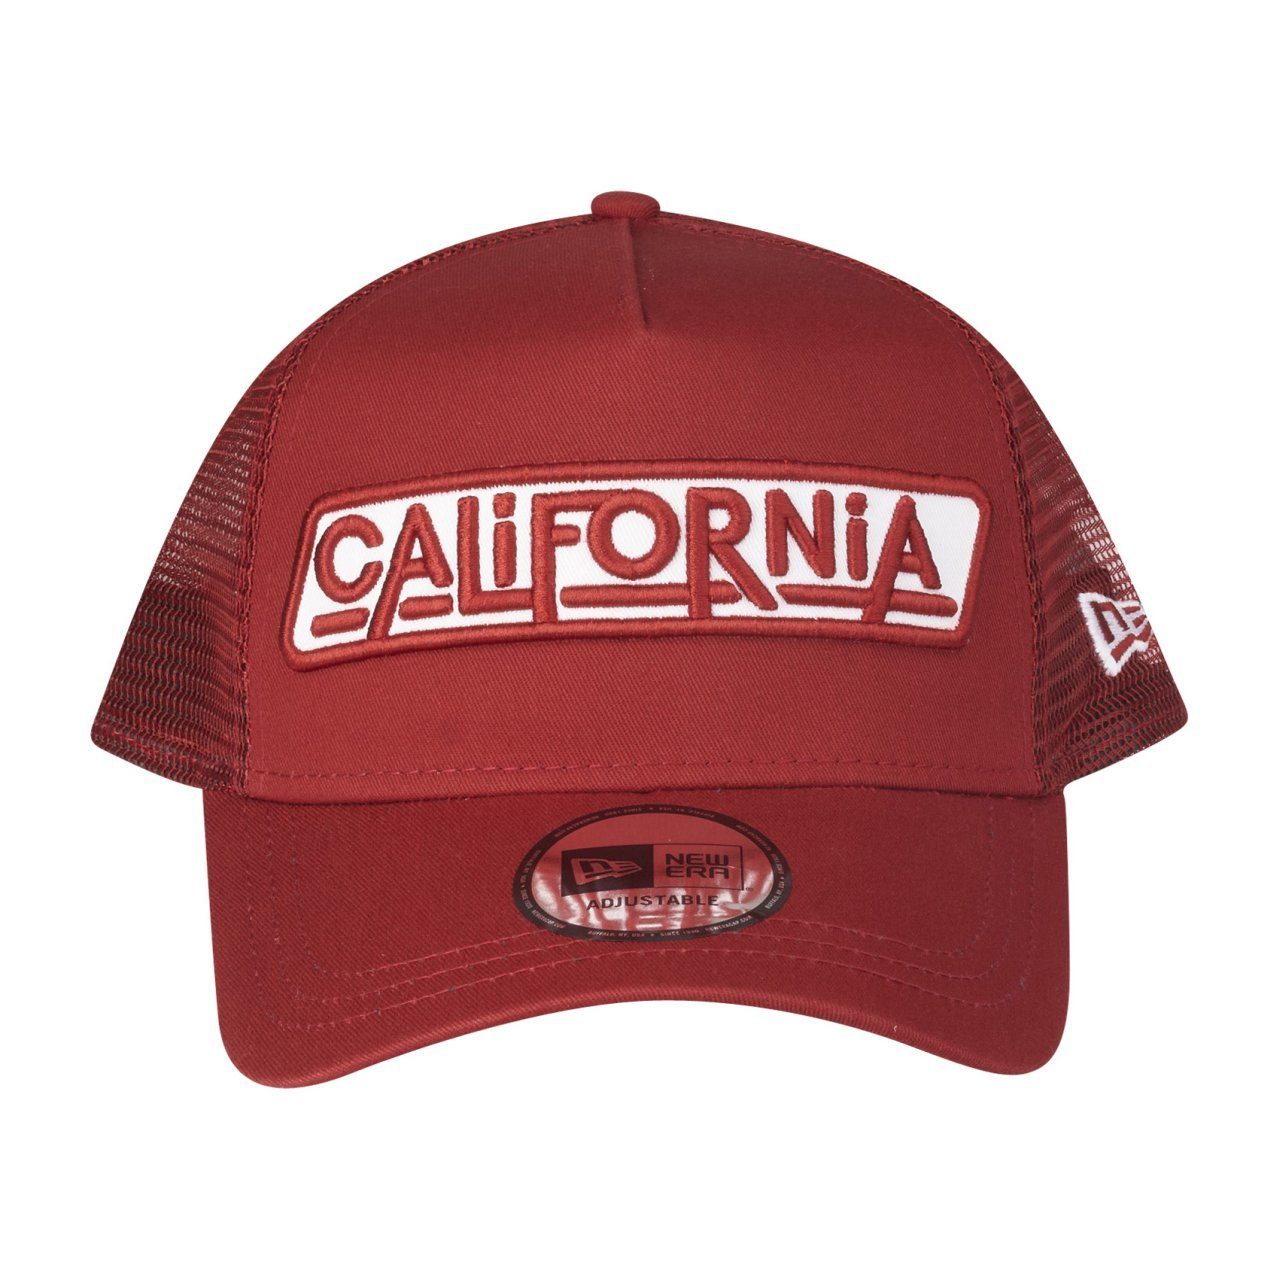 New Era Trucker Trucker AFrame USA California Cap